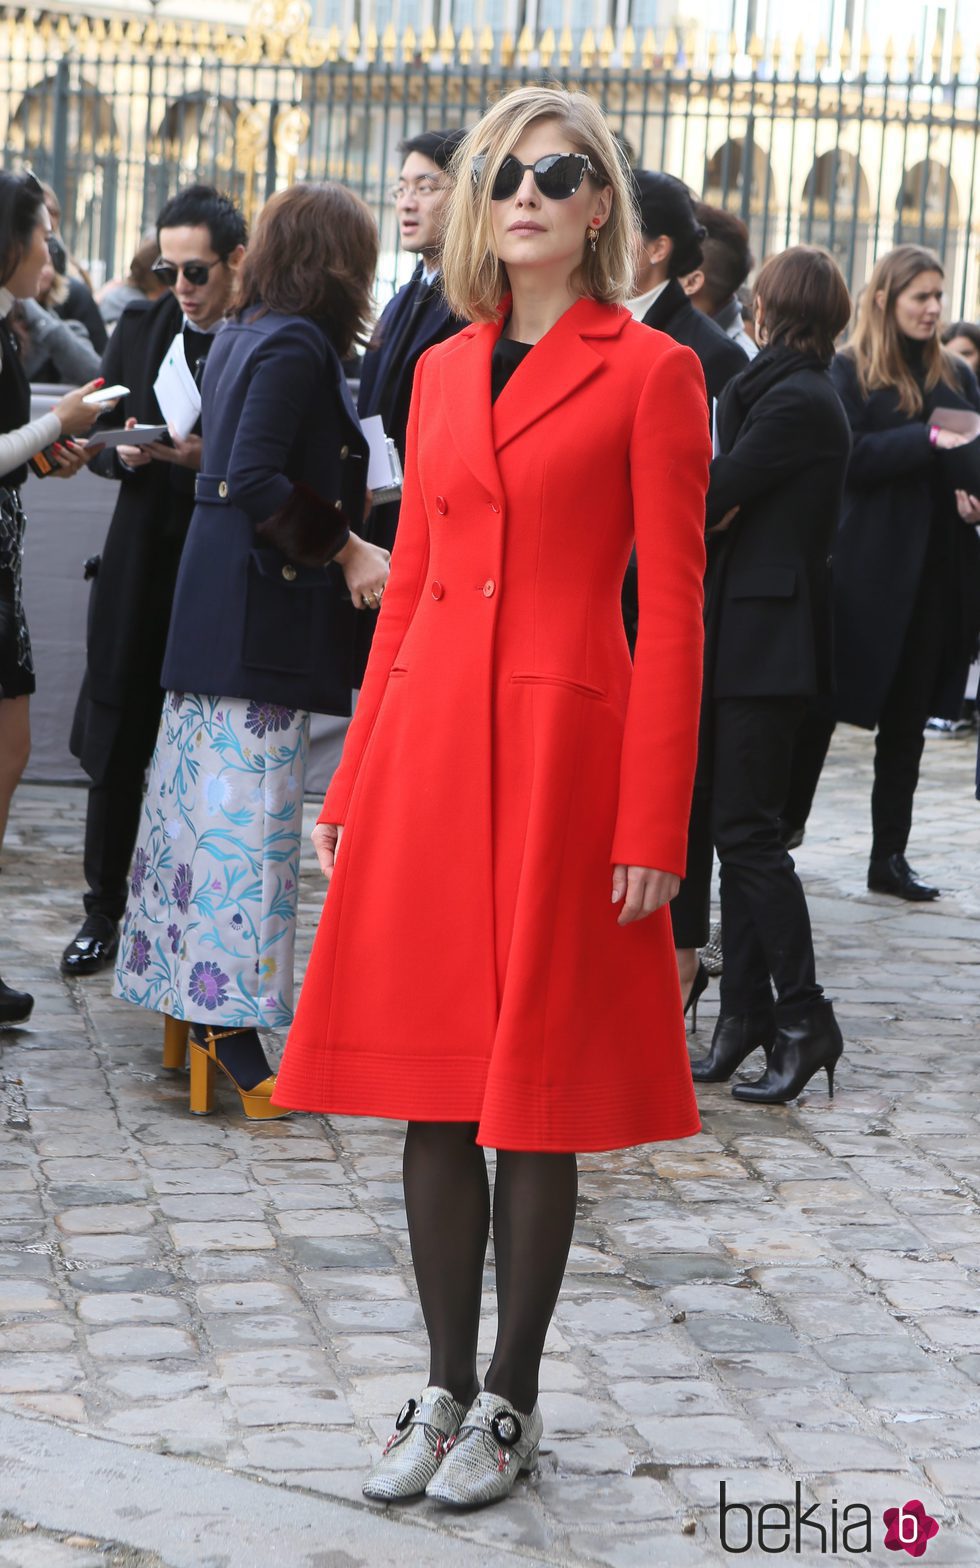 Rosamund Pike en el desfile de Christian Dior en Paris Fashion Week otoño/invierno 2016/2017